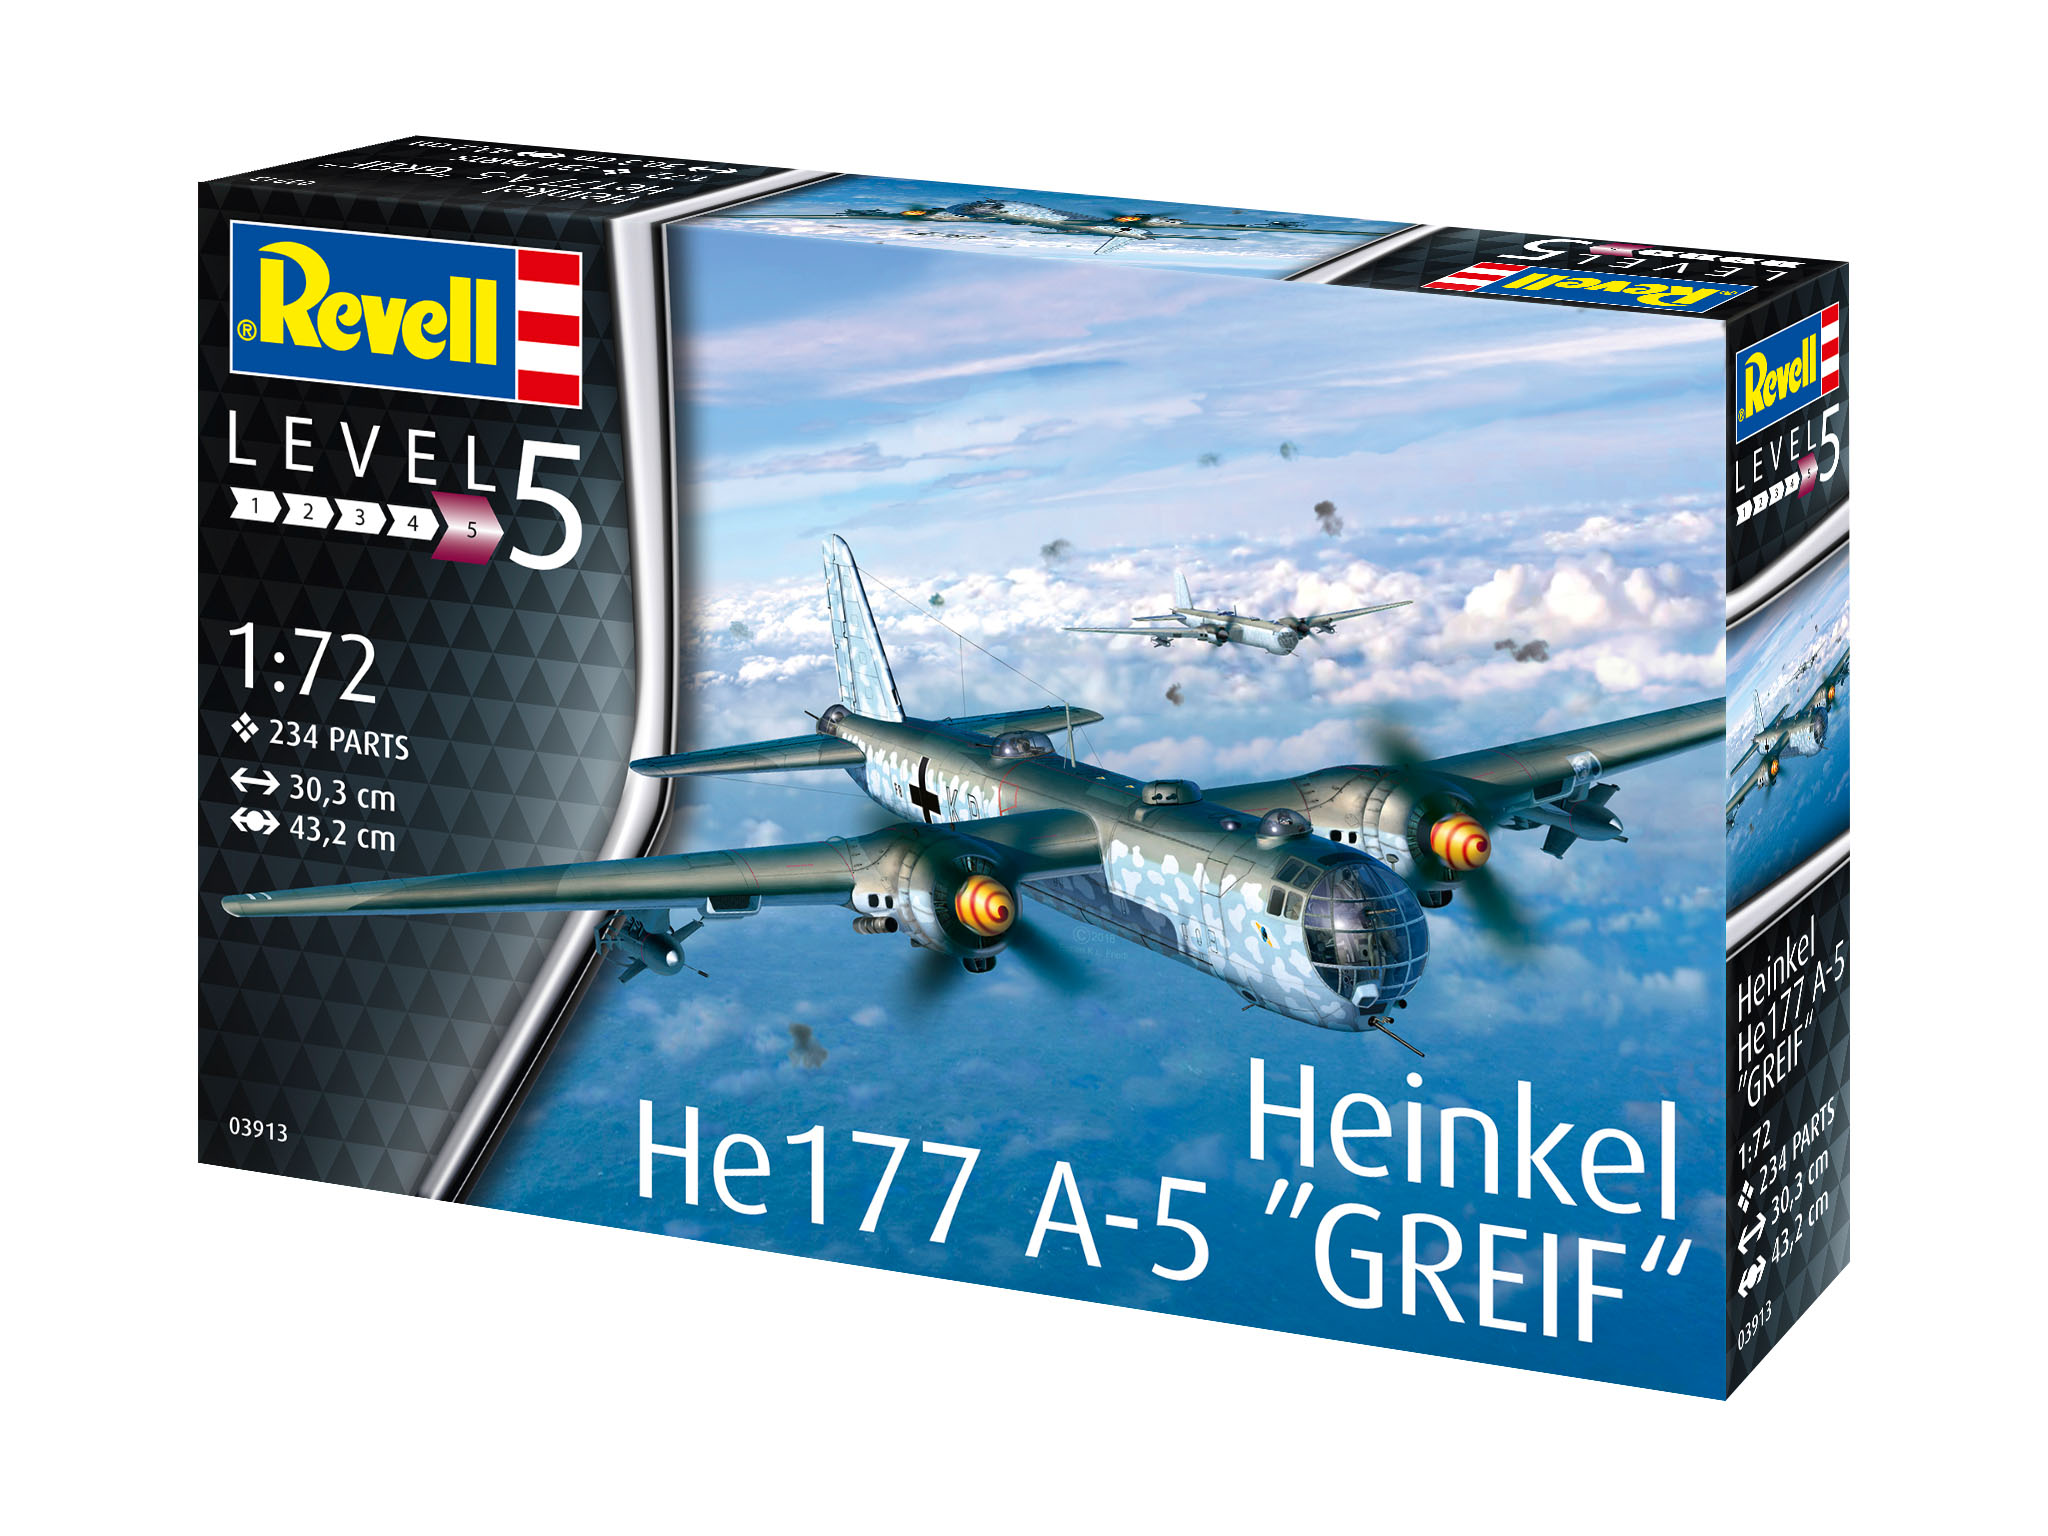 A-5 HE177 Heinkel Mehrfarbig Bausatz, REVELL Greif